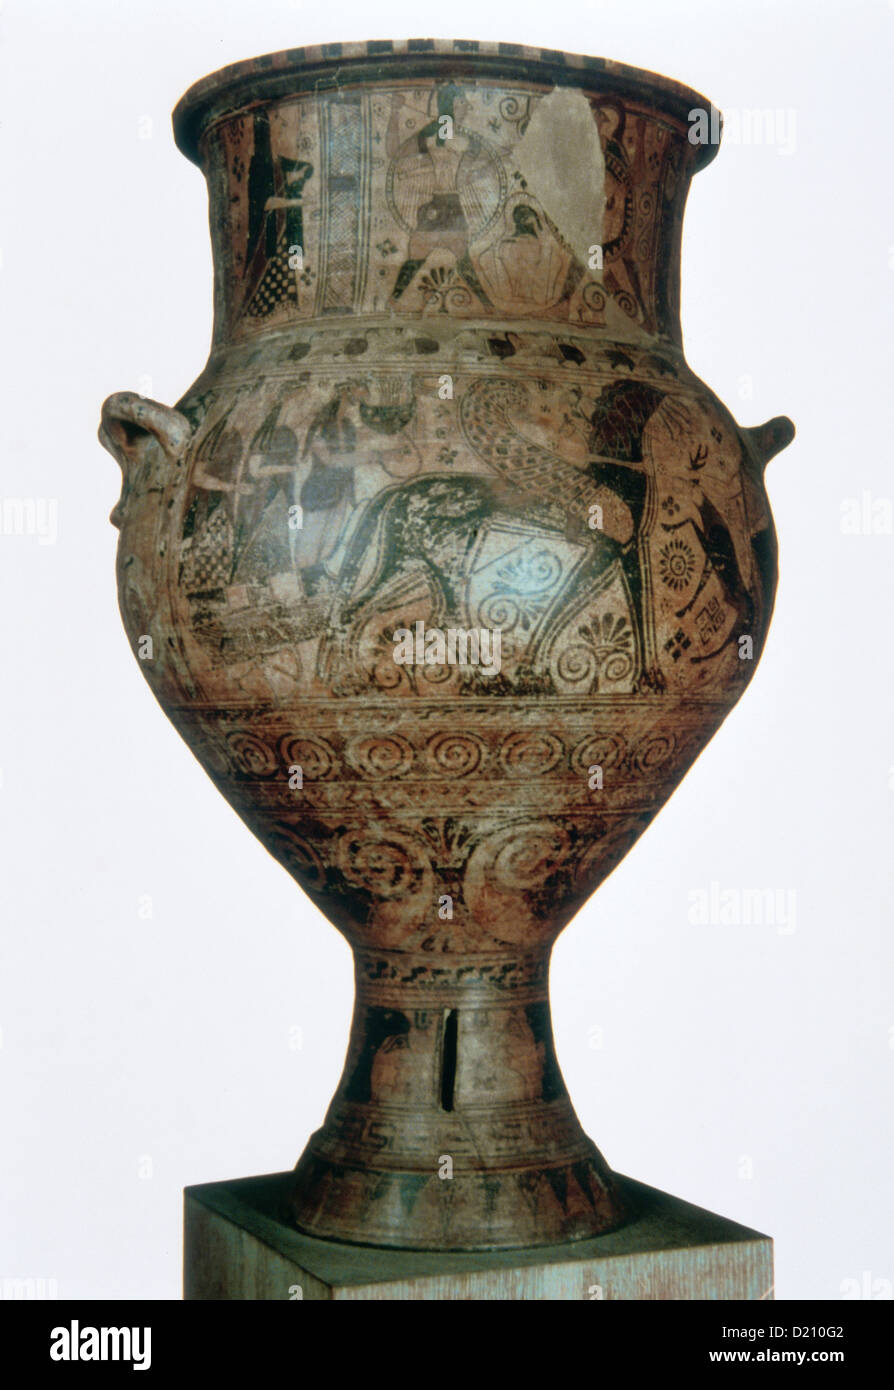 El arte griego. Arcaico. Ánfora de Melos. Datd entre 650-600 A.C. Apollo y musas en carro tirado por caballos alados. Foto de stock